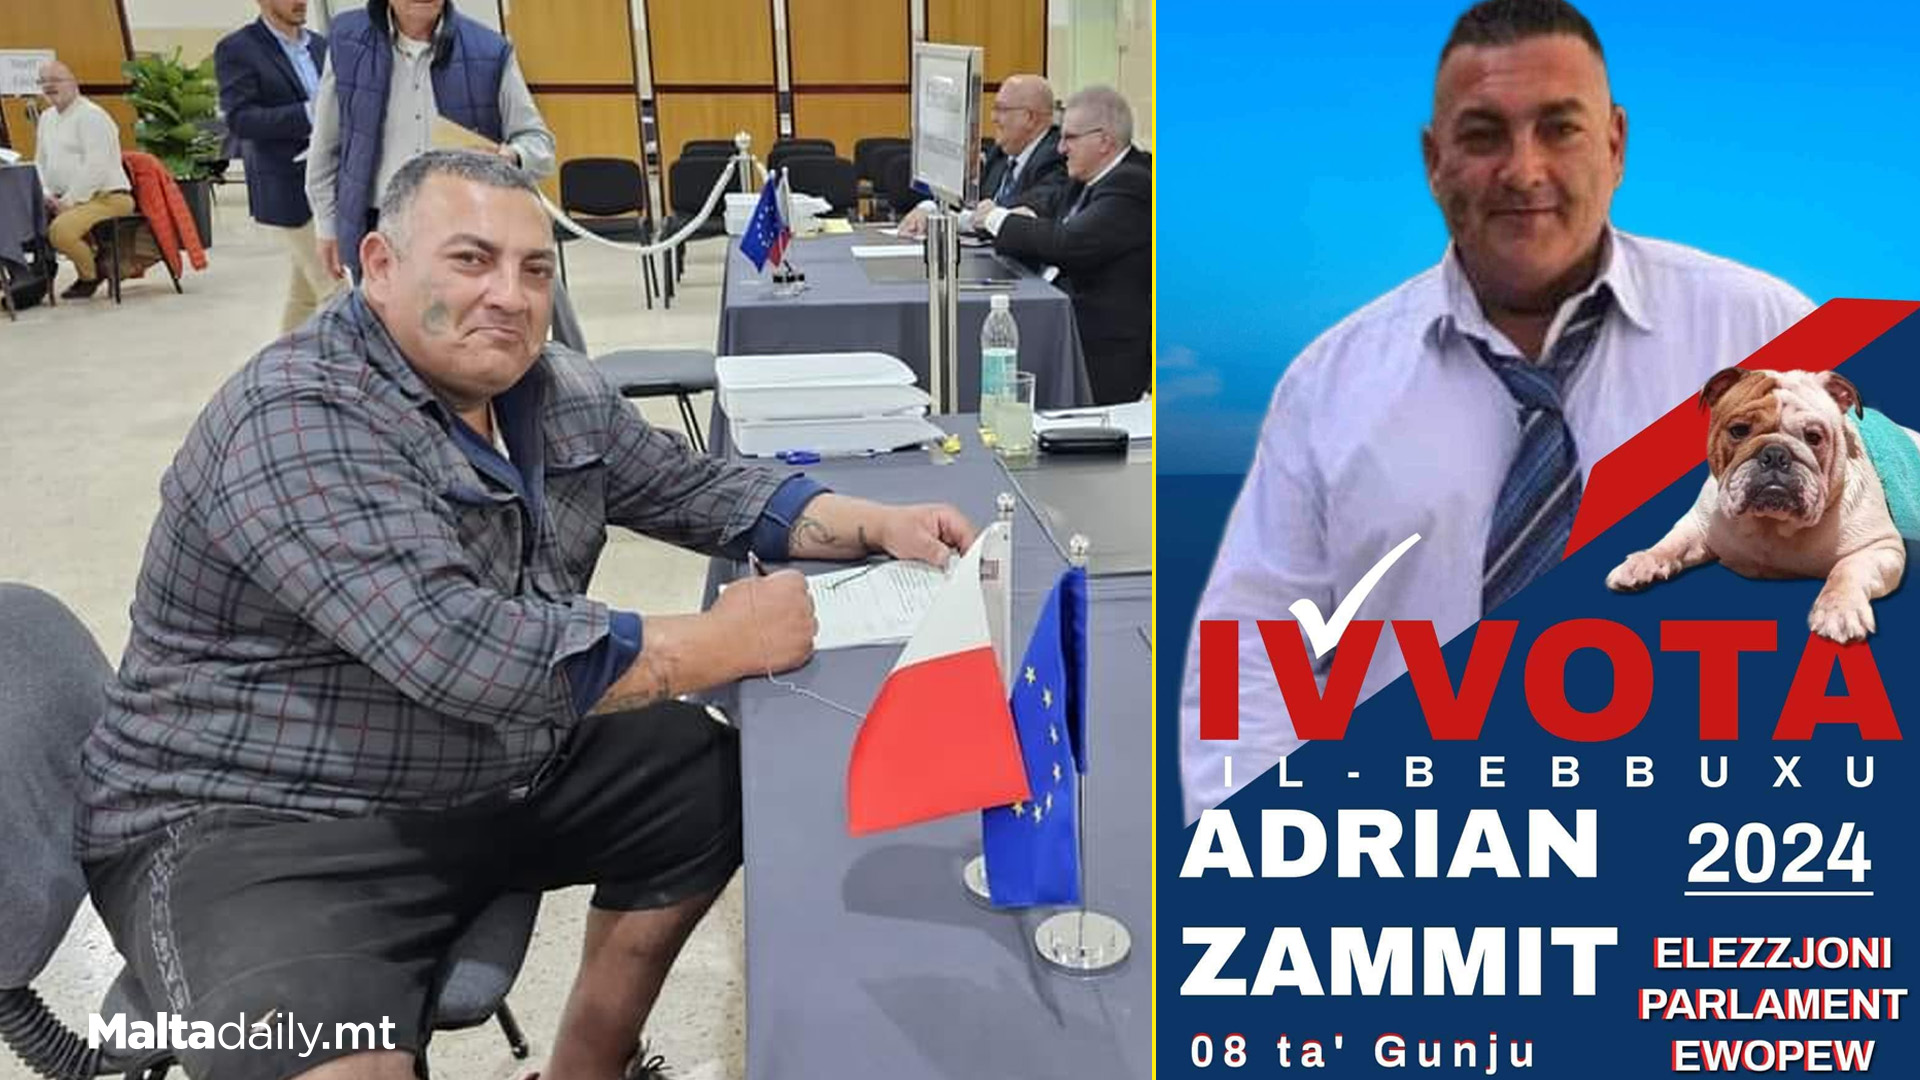 Adrian Żammit To Contest EU Elections